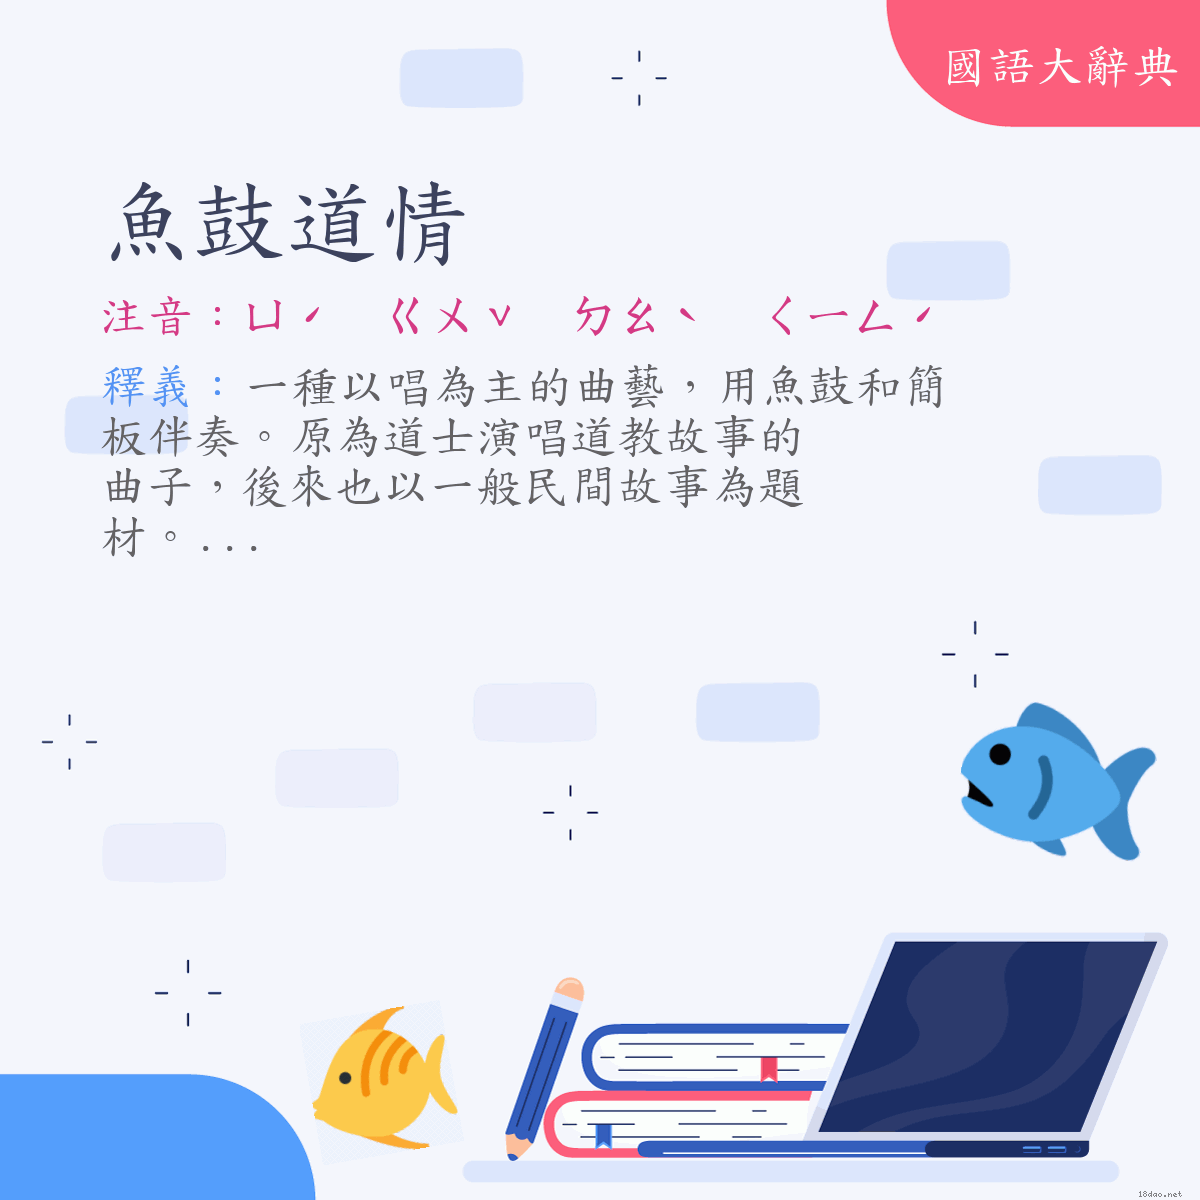 詞語:魚鼓道情 (注音:ㄩˊ　ㄍㄨˇ　ㄉㄠˋ　ㄑㄧㄥˊ)